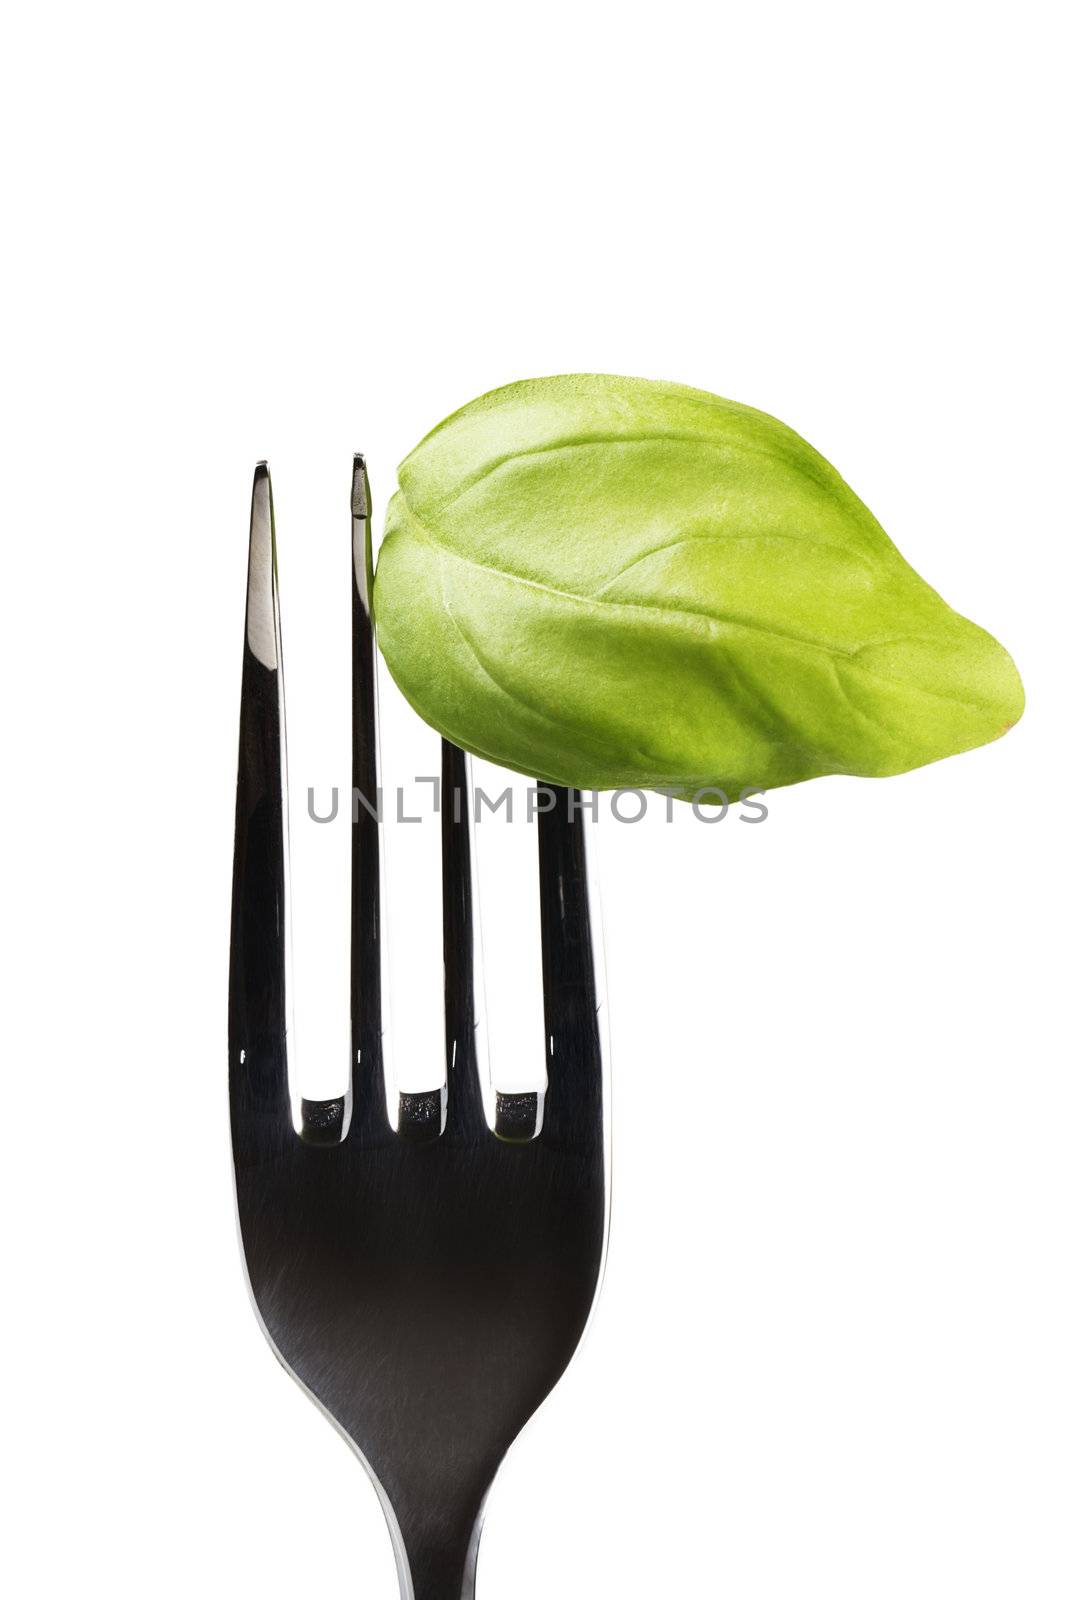 basil leaf on fork by RobStark